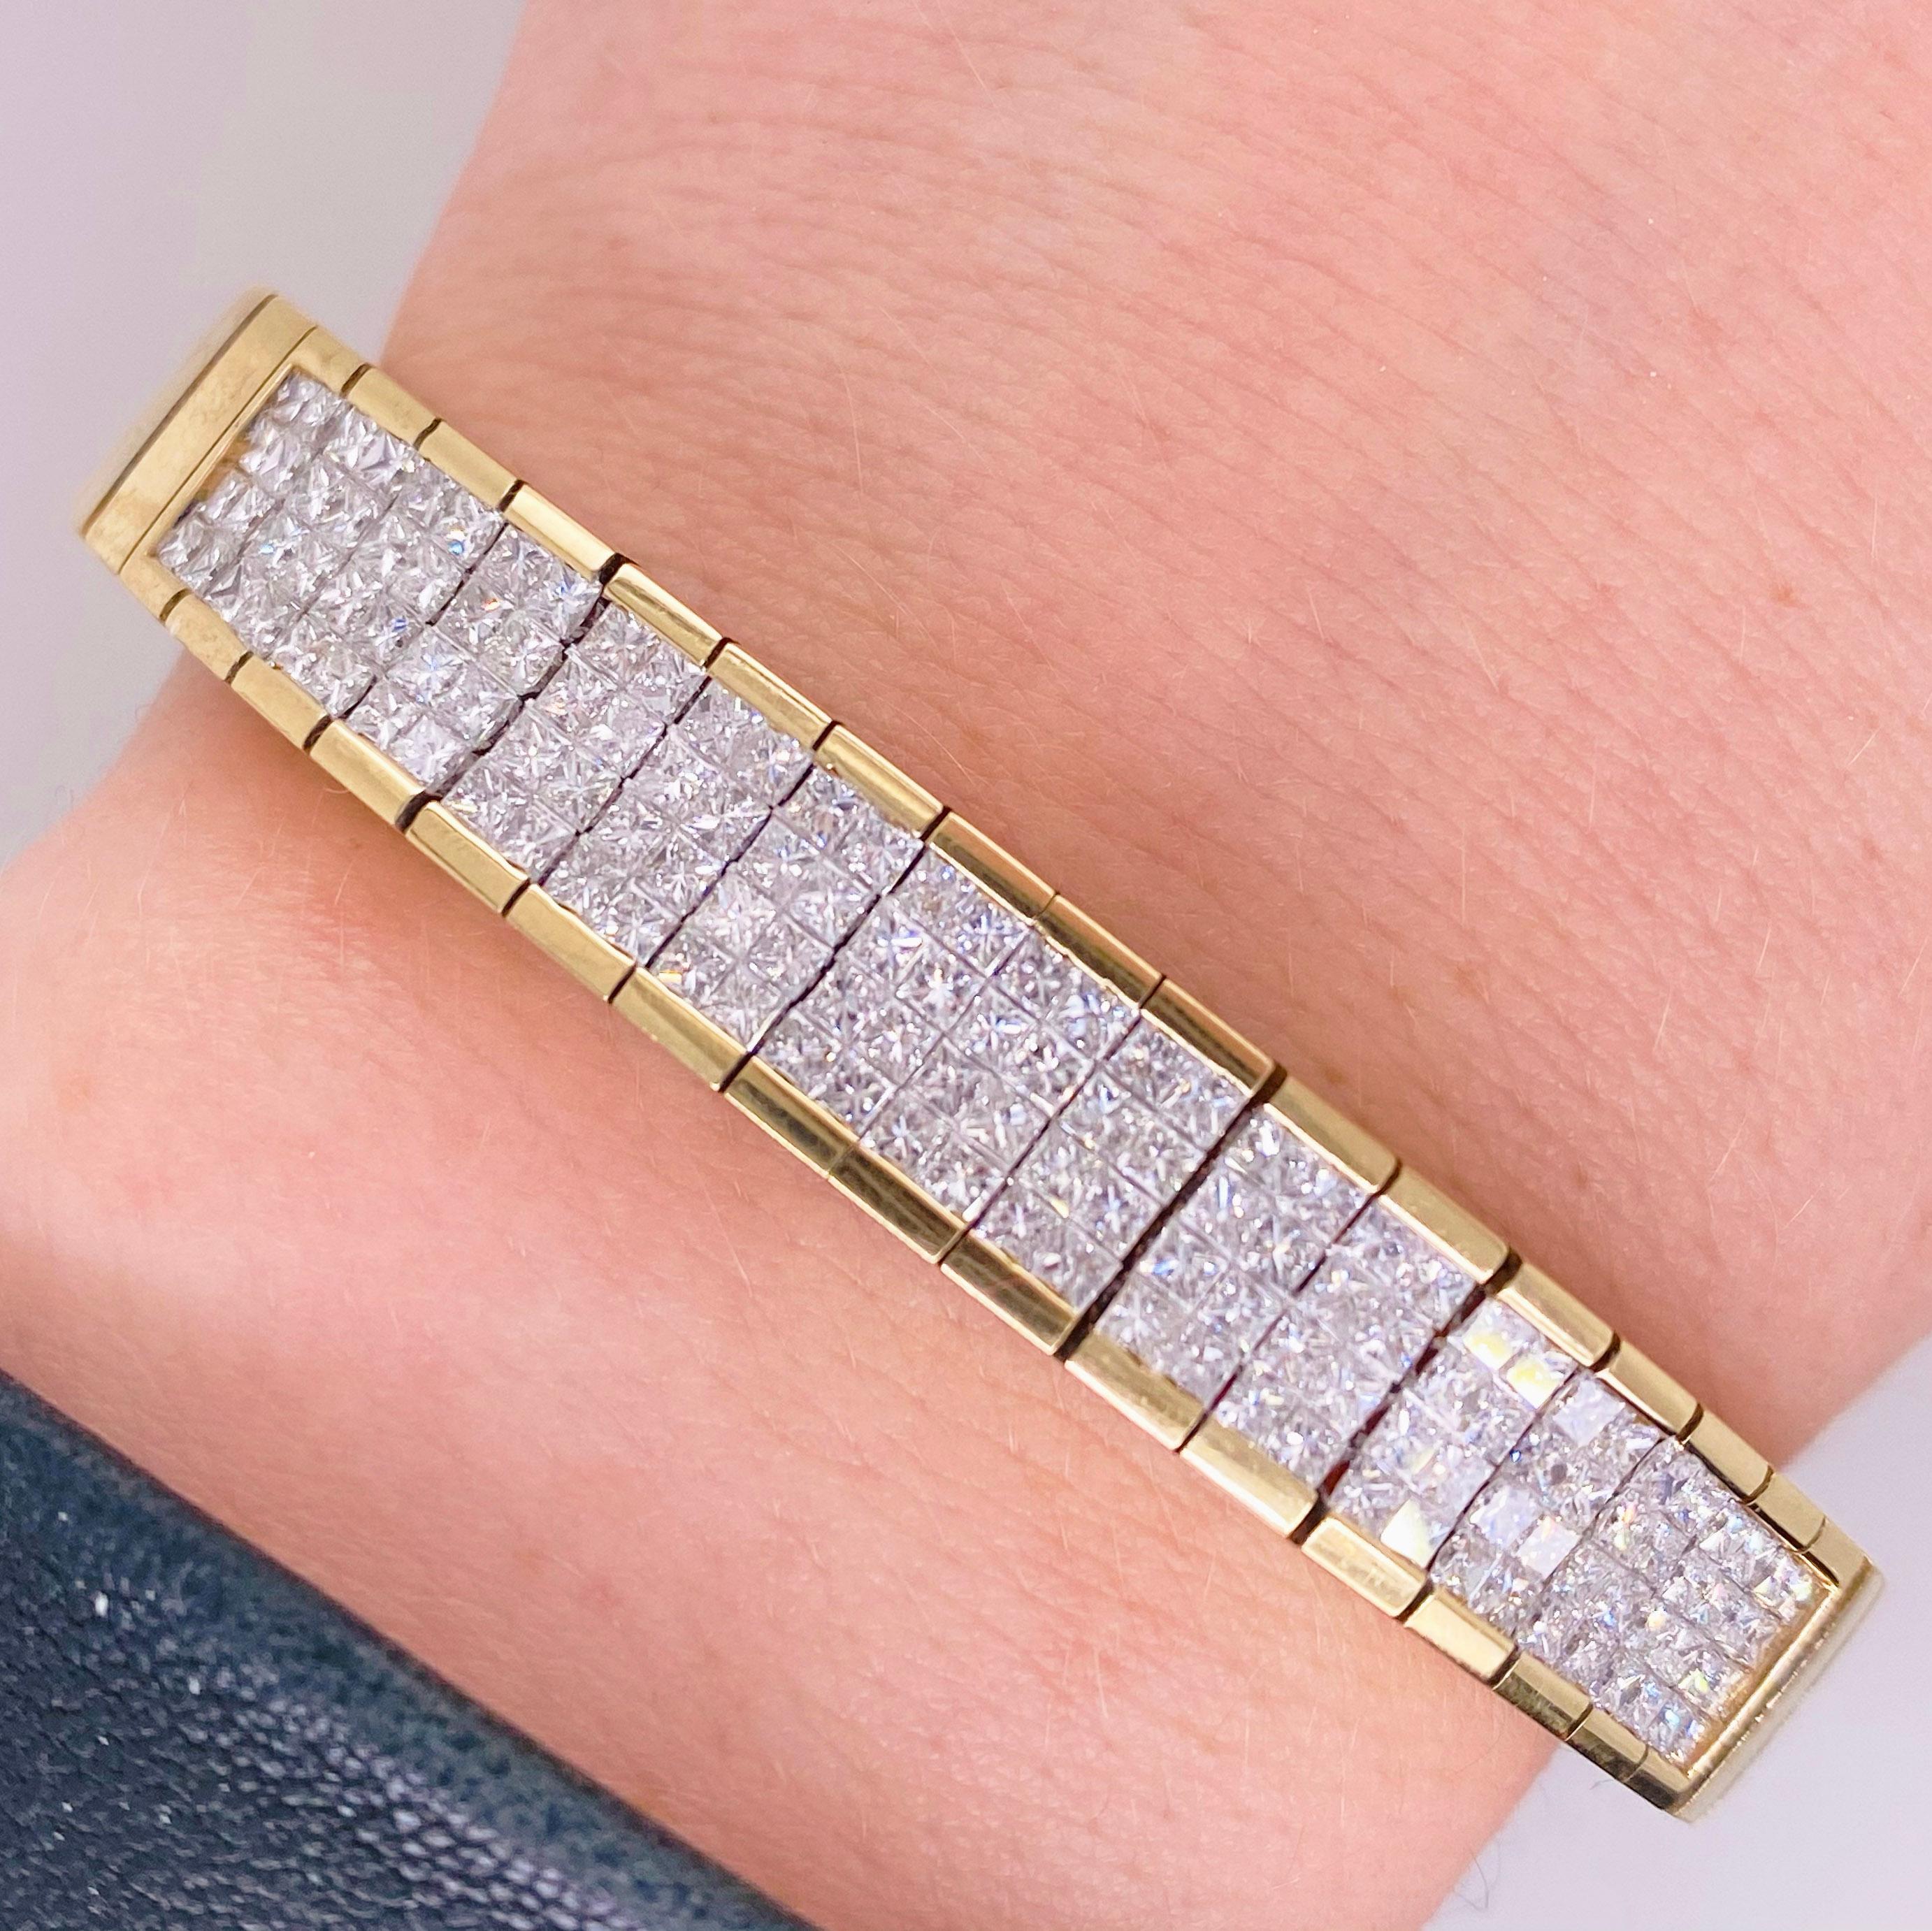 Diamant-Paved-Armband mit 4 Karat (4,00 ct) Gesamtgewicht von Diamanten im Prinzessschliff

Das perfekte Accessoire für den Alltag oder einen formellen Anlass! Dieses Diamantarmband ist mit seinen 4 Karat unsichtbar gefassten